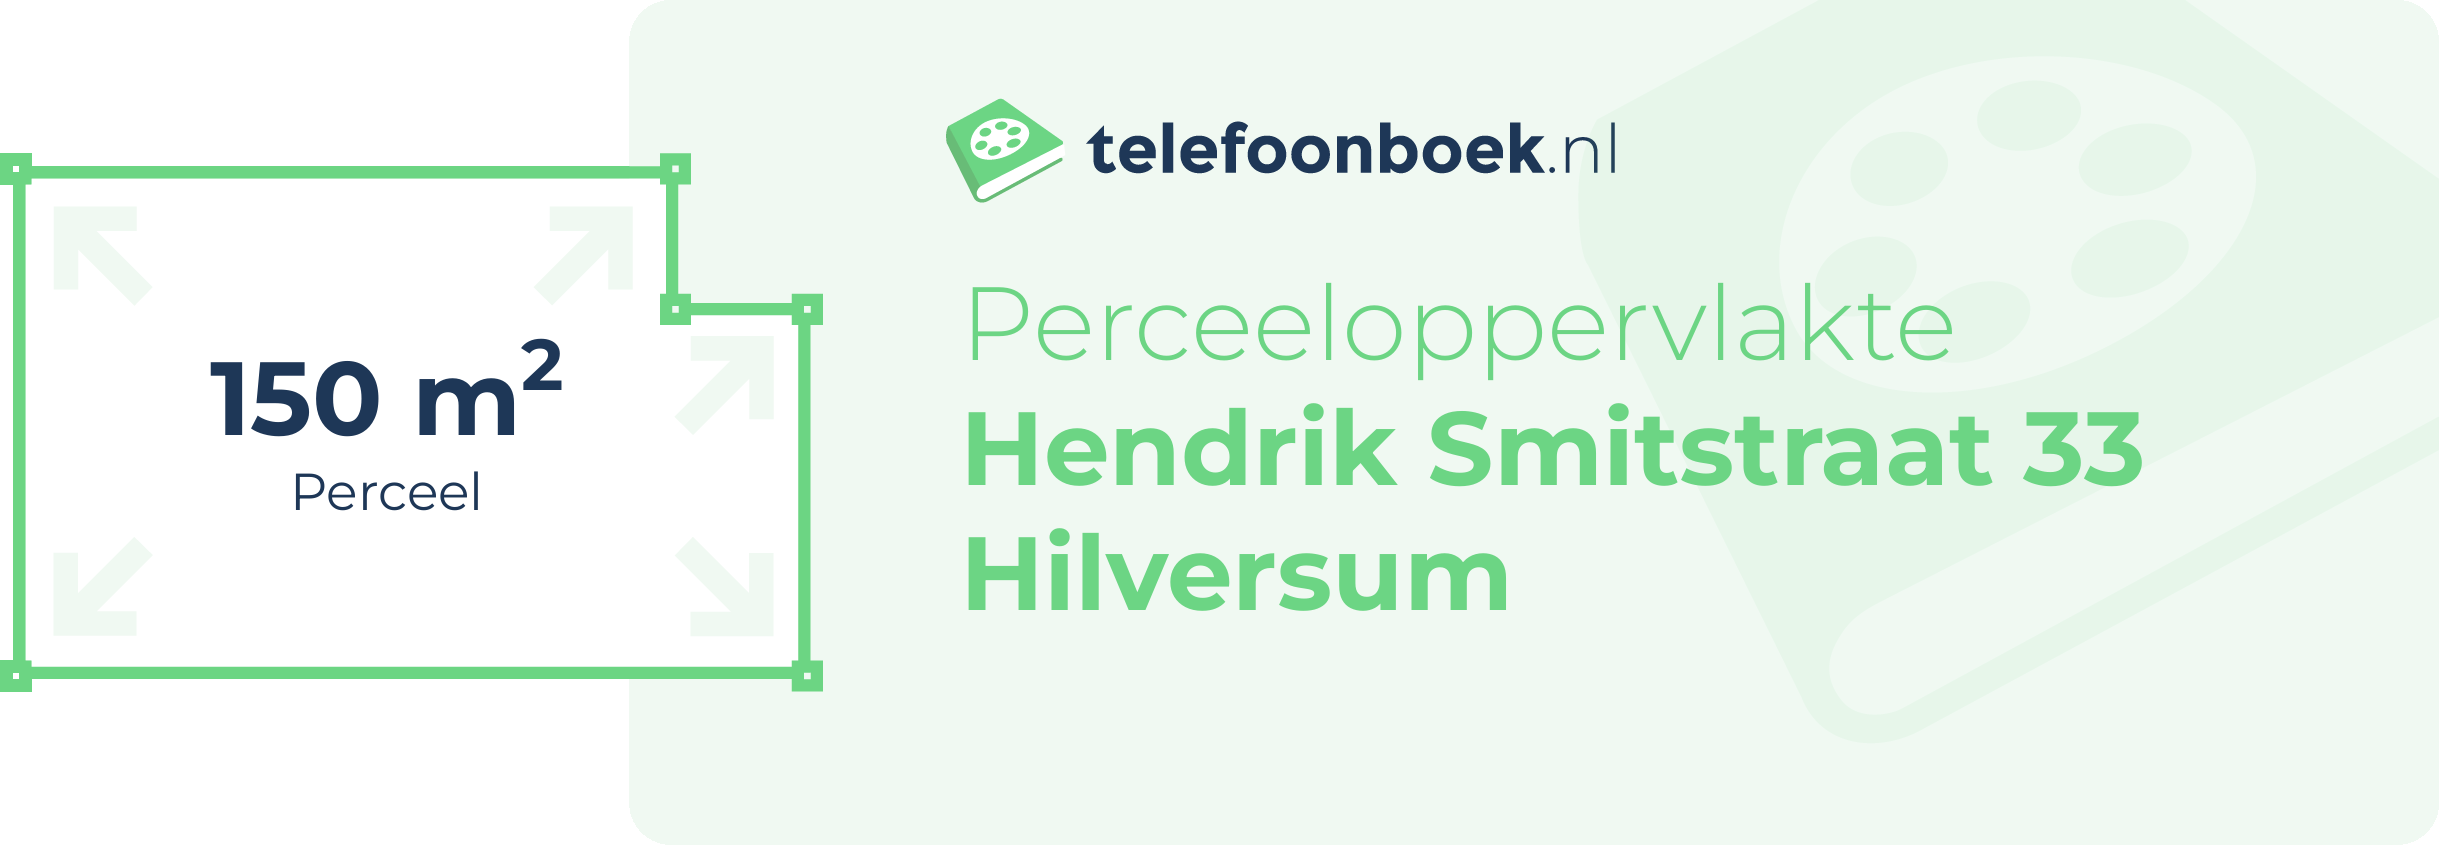 Perceeloppervlakte Hendrik Smitstraat 33 Hilversum